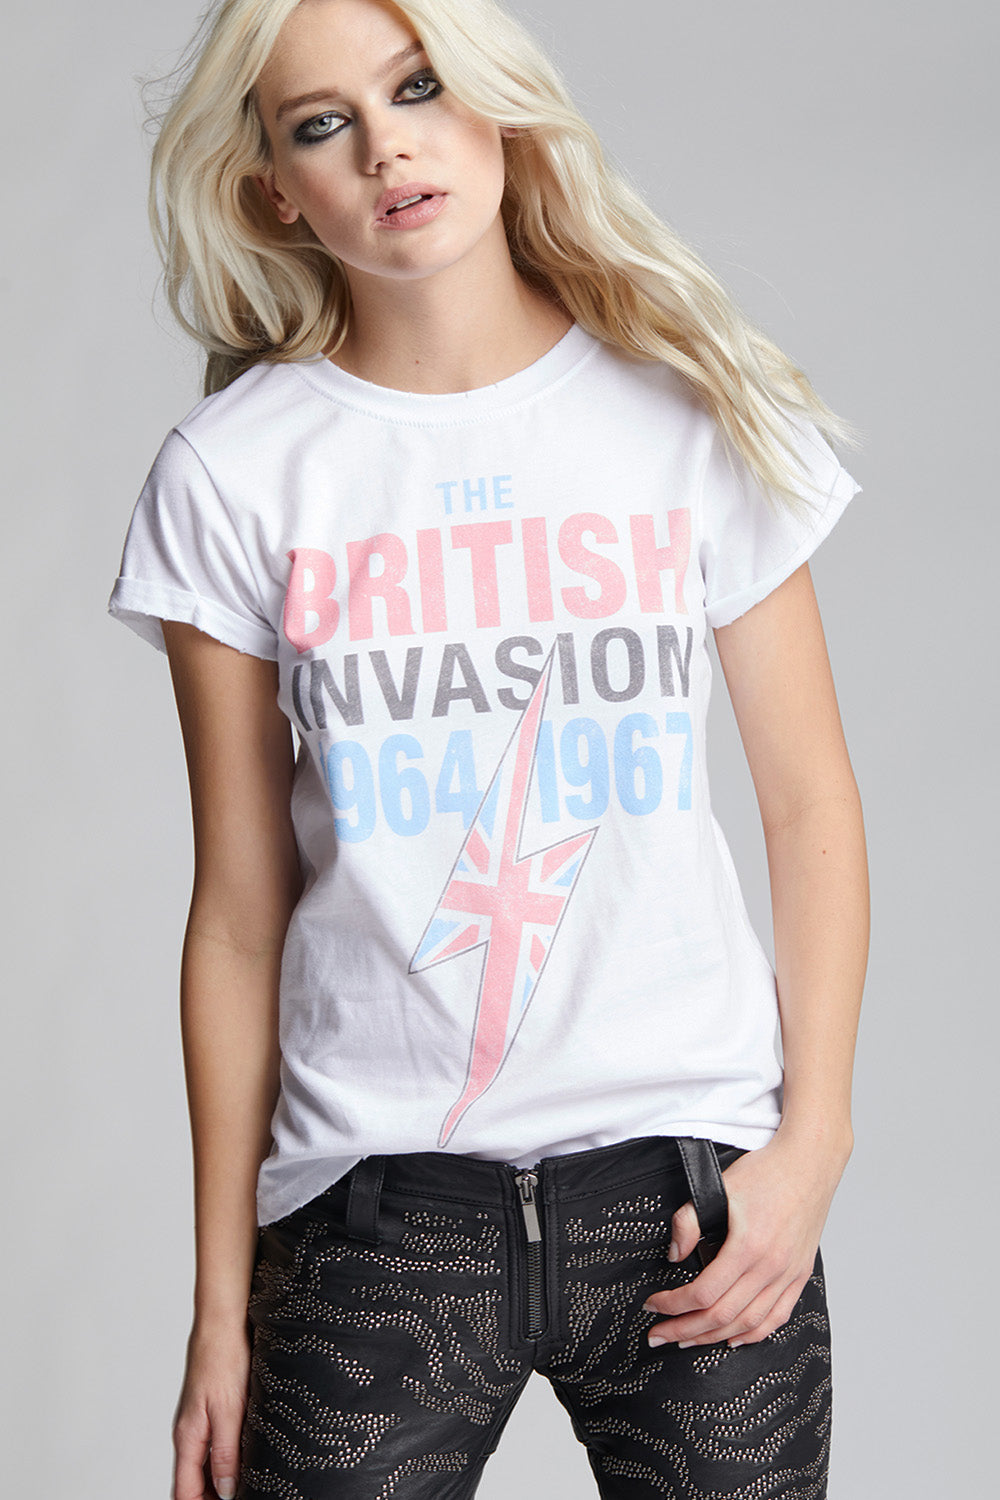 Classic British Invasion Tour Tee